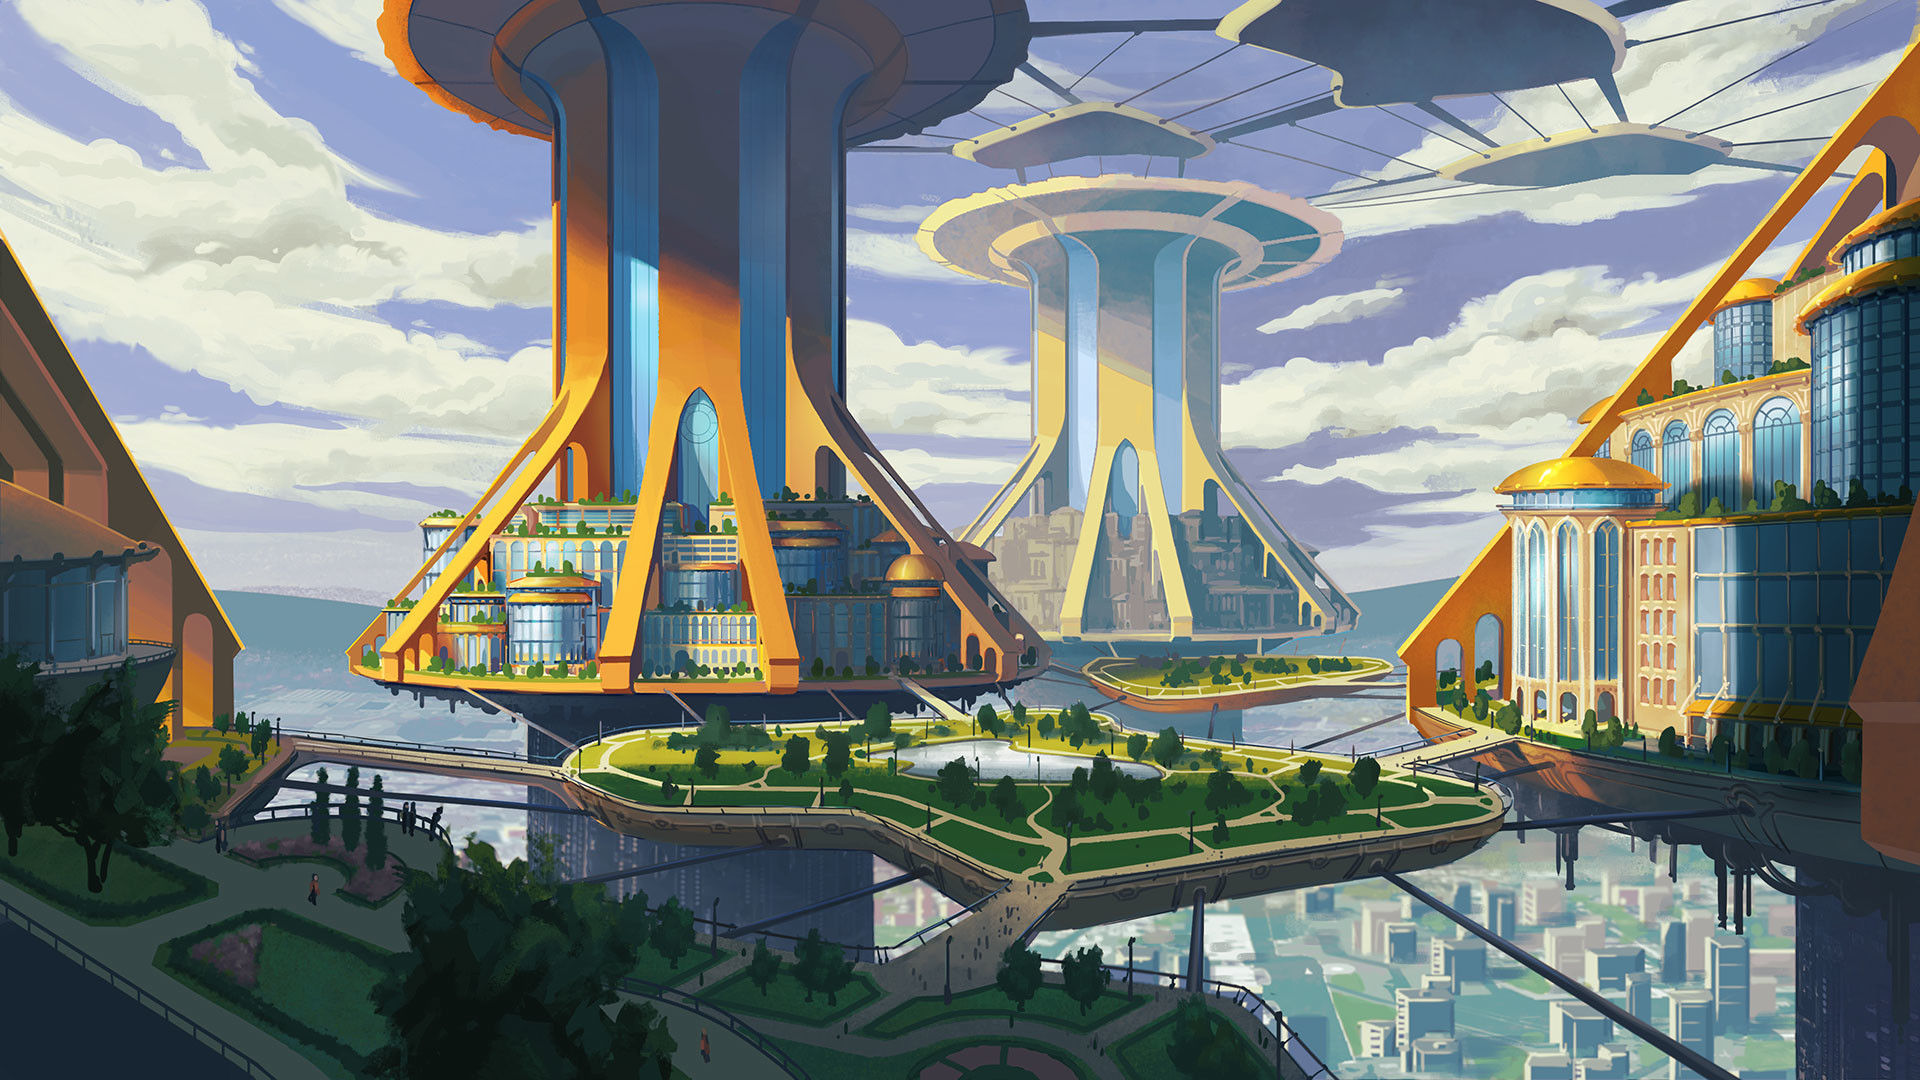 Future town. Экогород будущего Япония концепт арт. Футуристический пейзаж. Город из мультфильма.